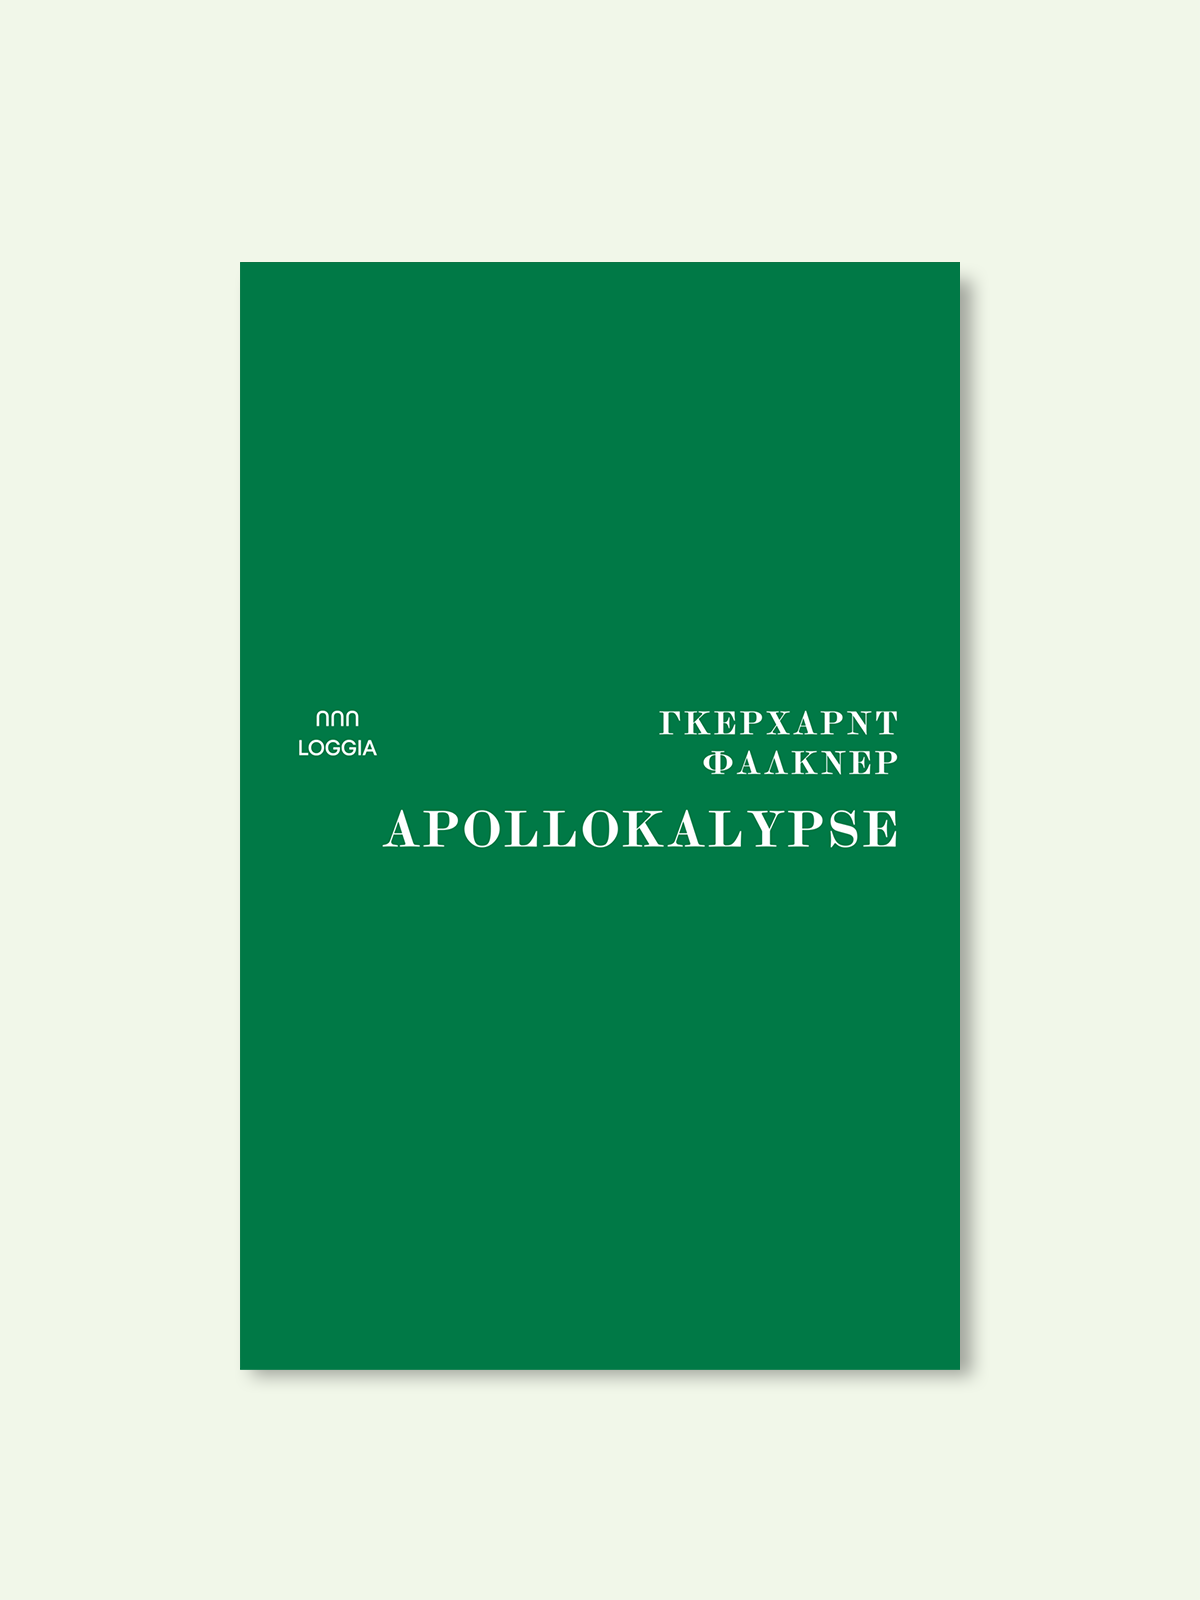 APOLLOKALYPSE books